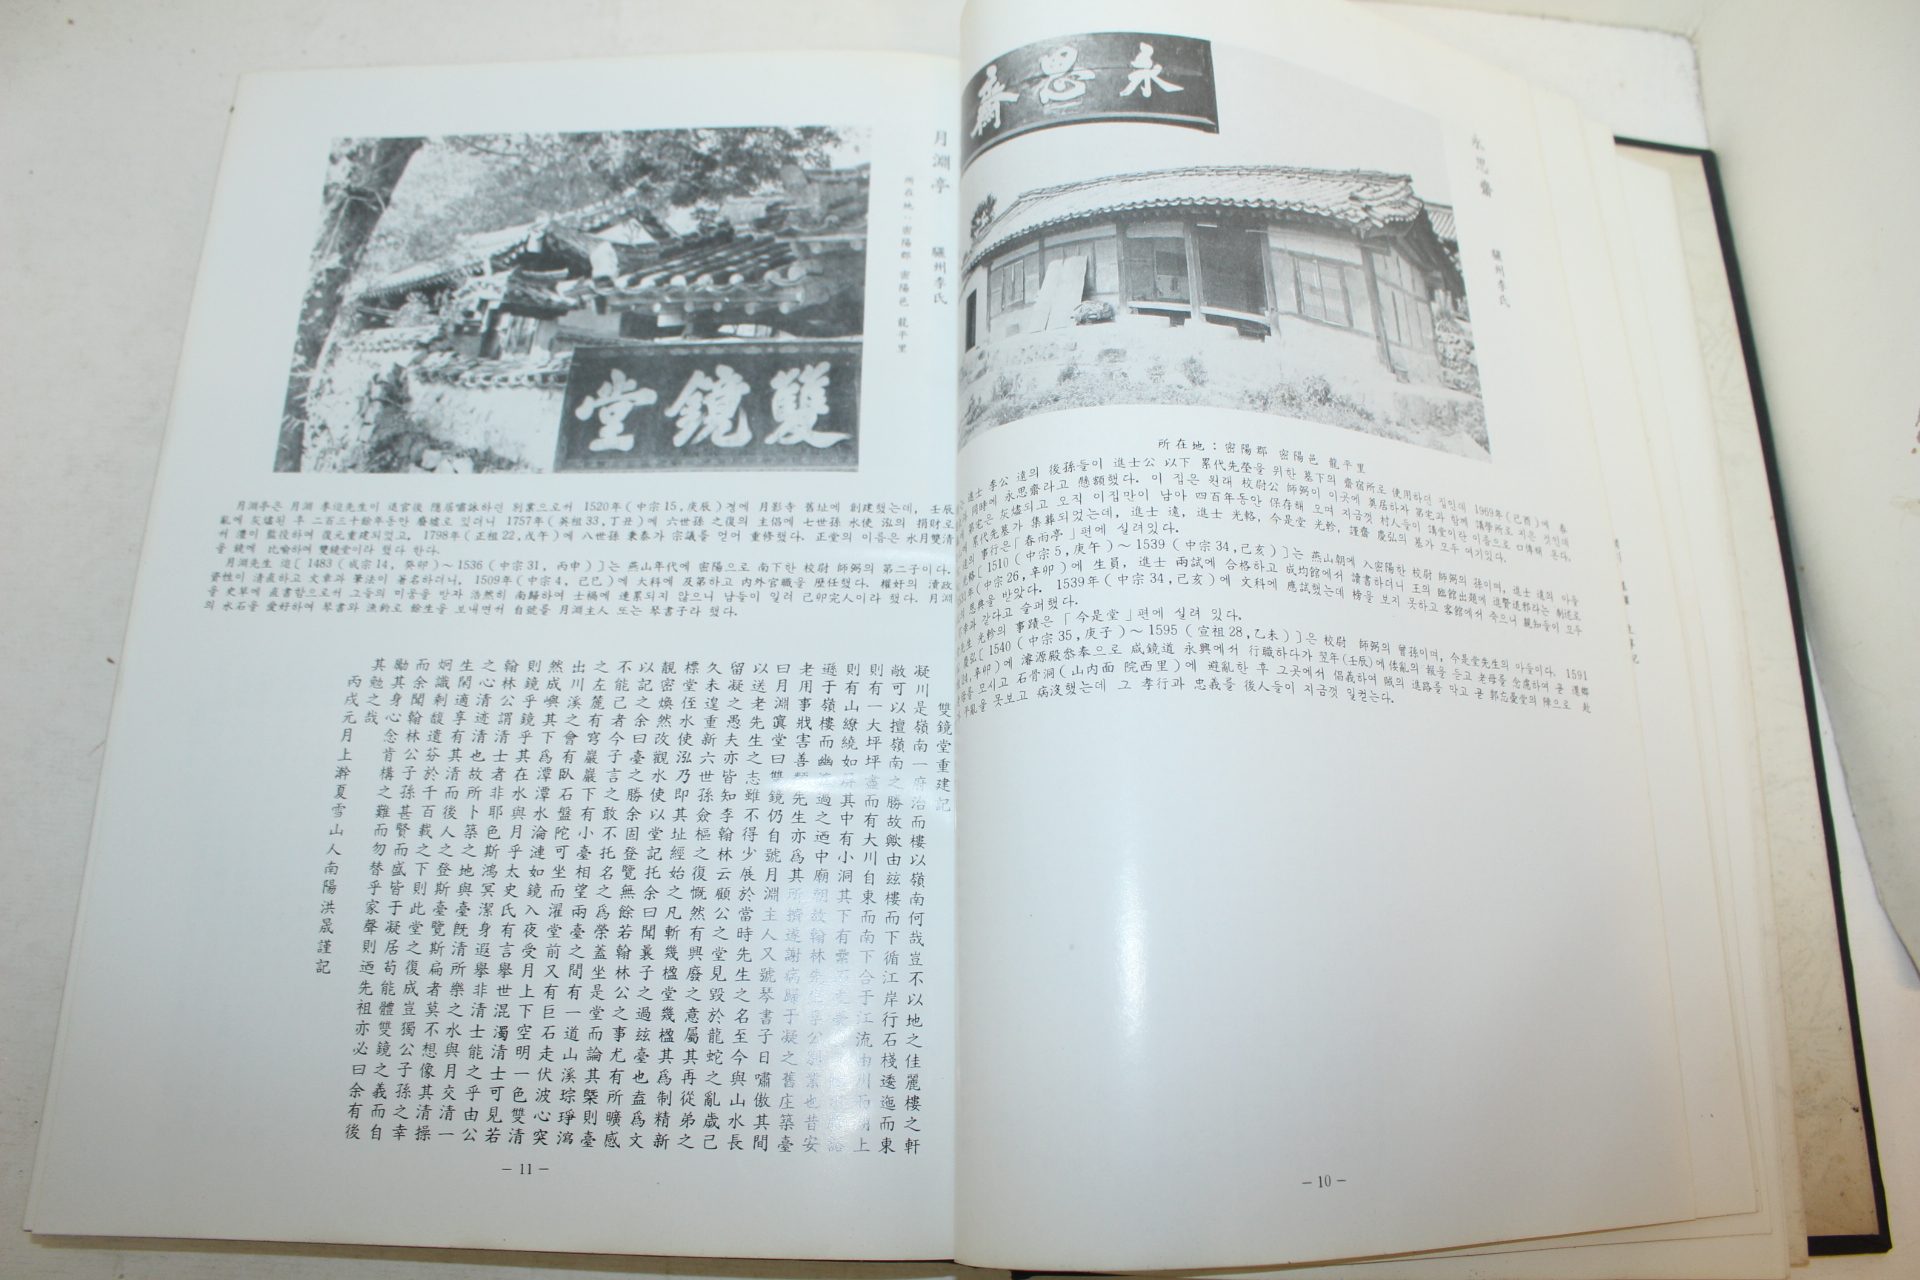 1984년 밀양누정록(密陽樓亭錄)